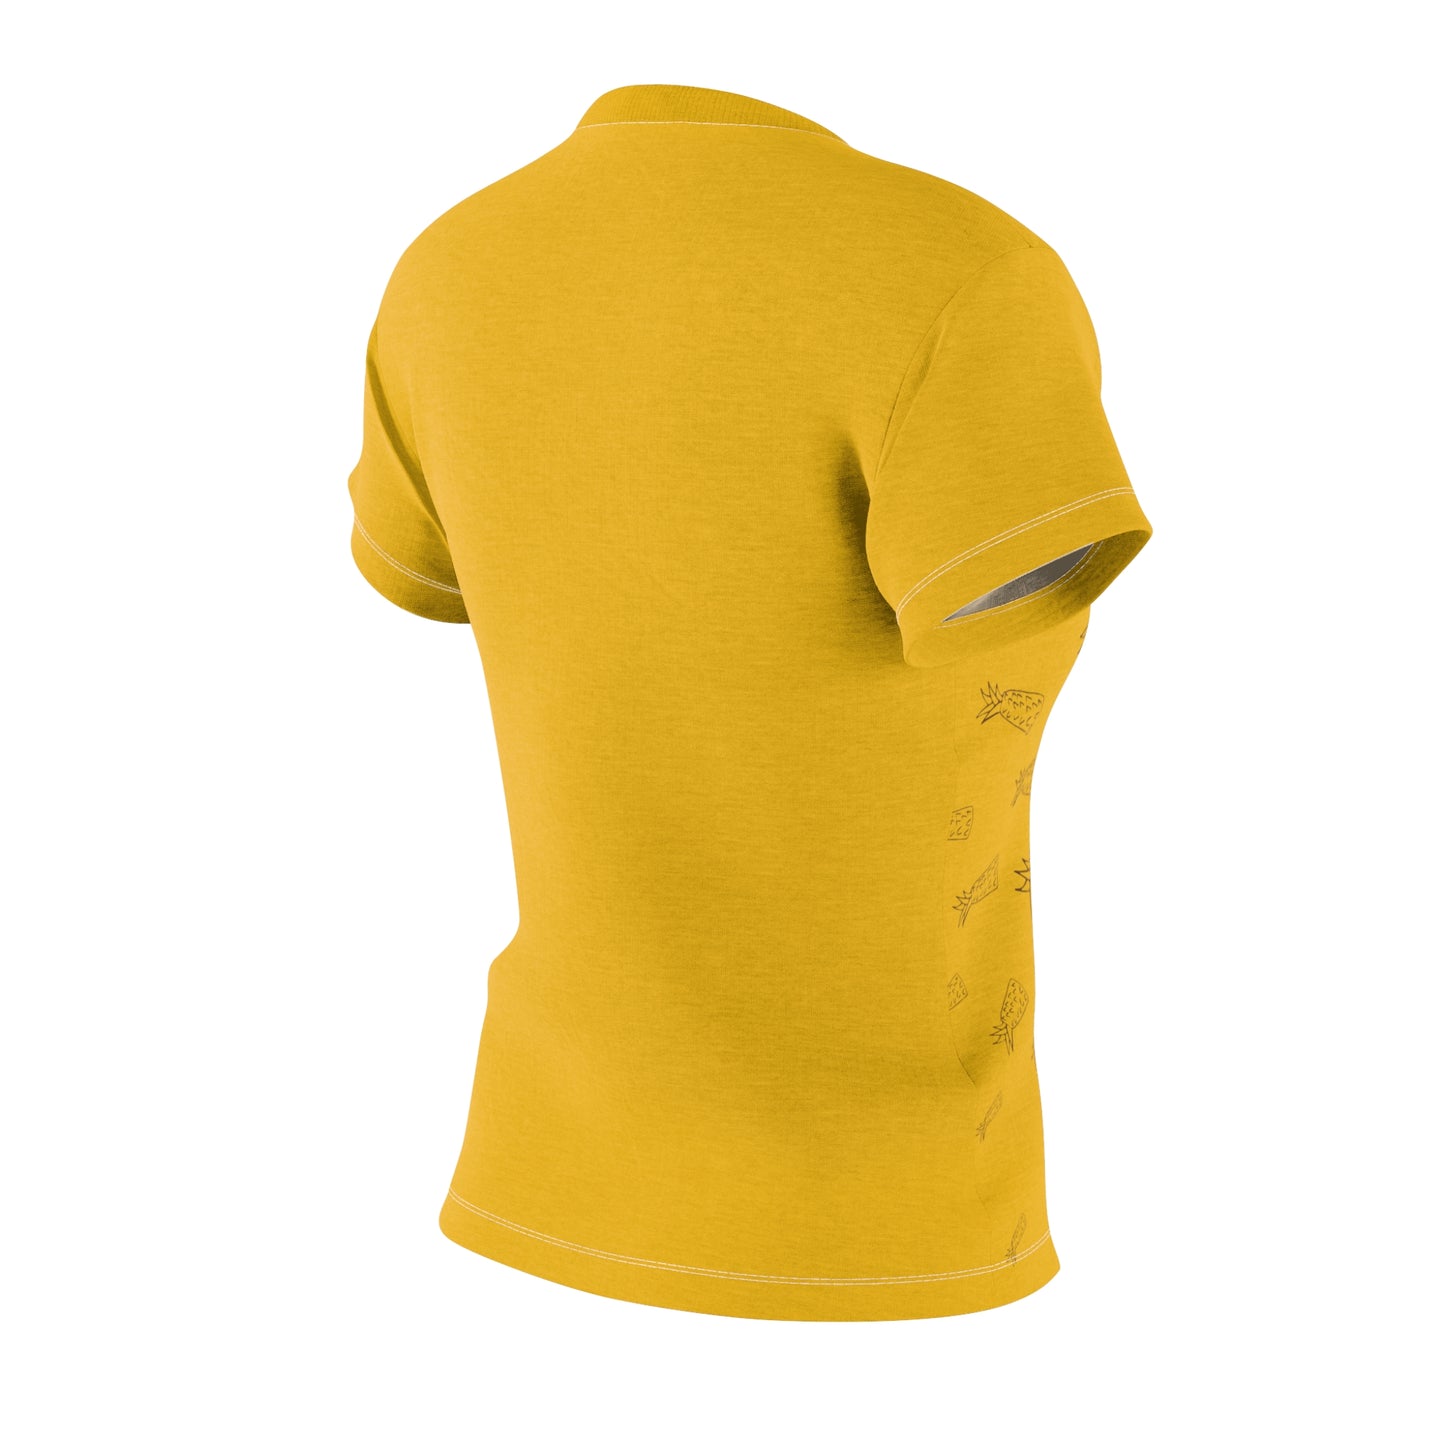 Joy Women's T-Shirt (Yellow)